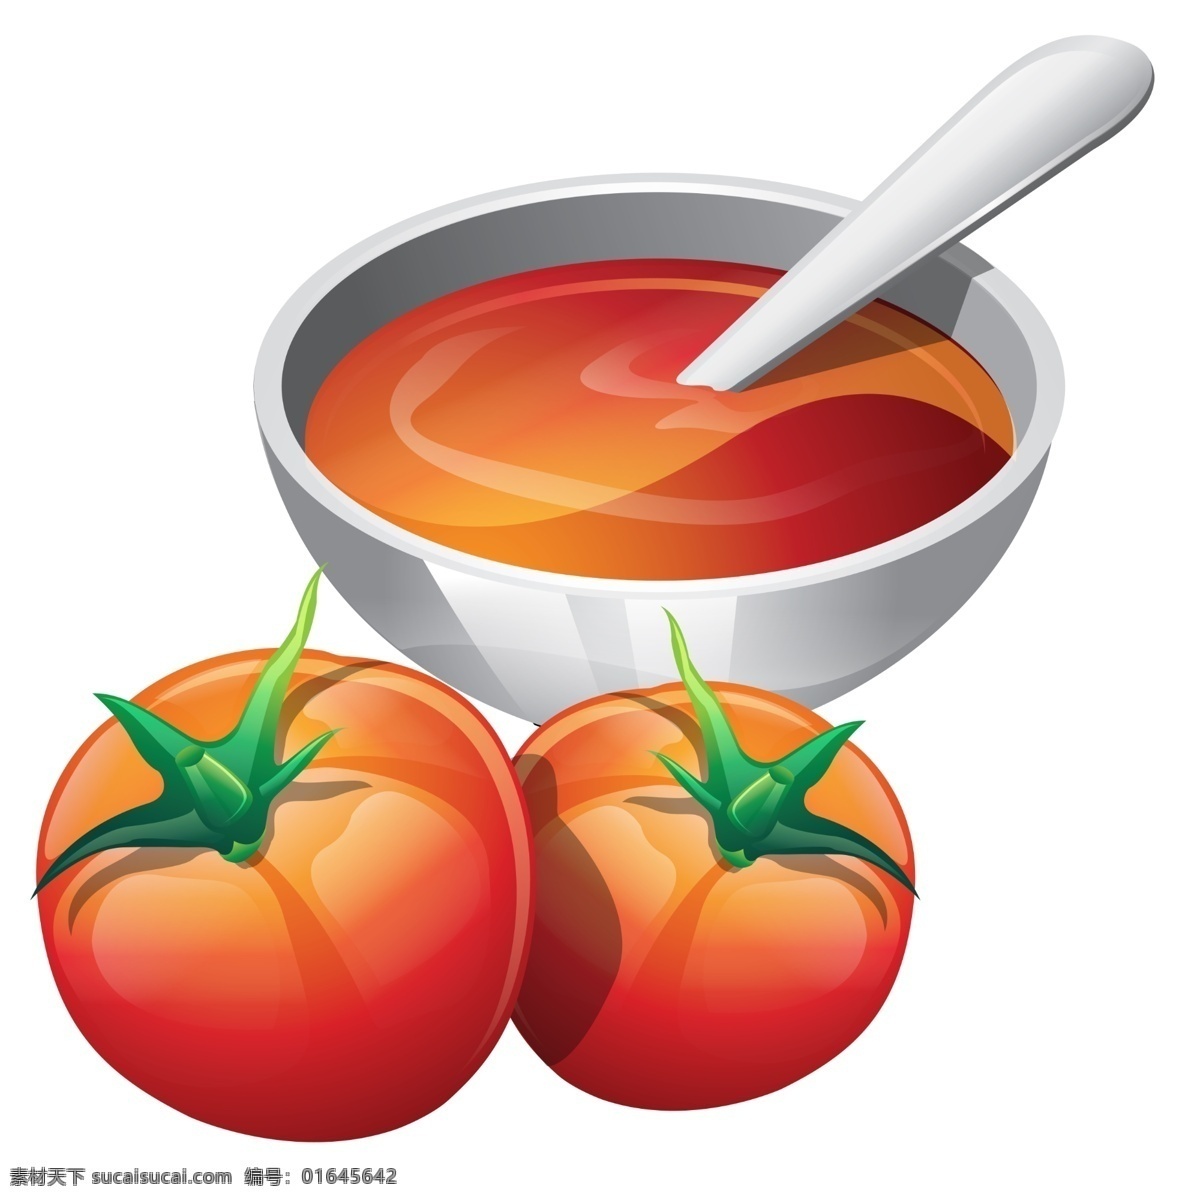 西红柿 番茄 番茄设计 碗汤 勺子 番茄酱 超市蔬菜 蔬菜 高清 平面设计 餐饮美食 手绘 卡通设计 艺术设计 背景分层 白色背景 蔬果 分层 源文件